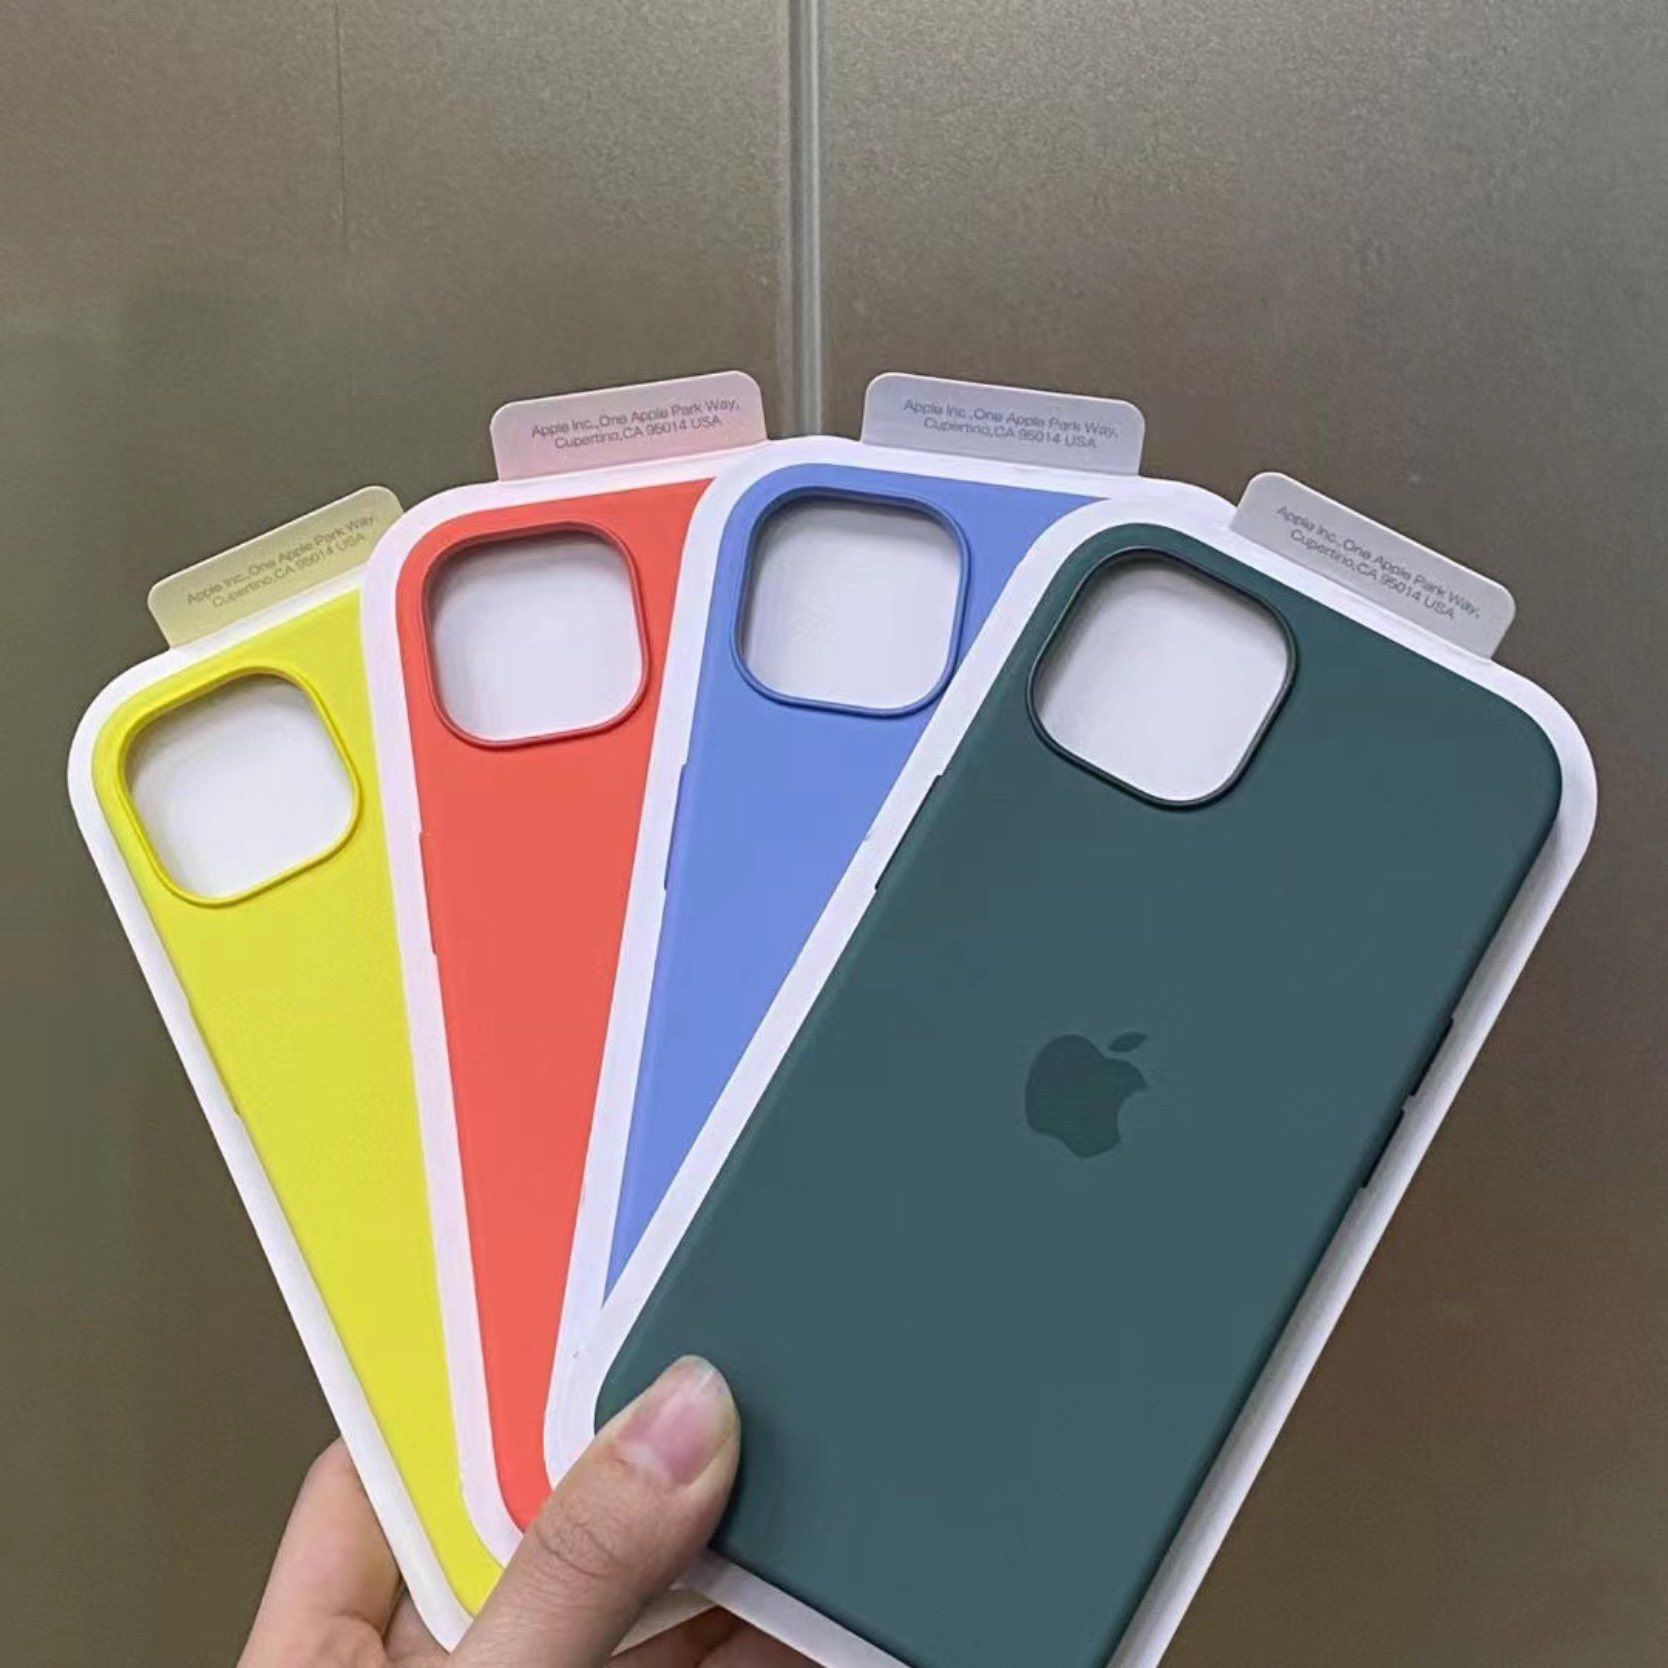 Des images divulguées montrent de nouvelles couleurs de printemps pour les étuis iPhone 13